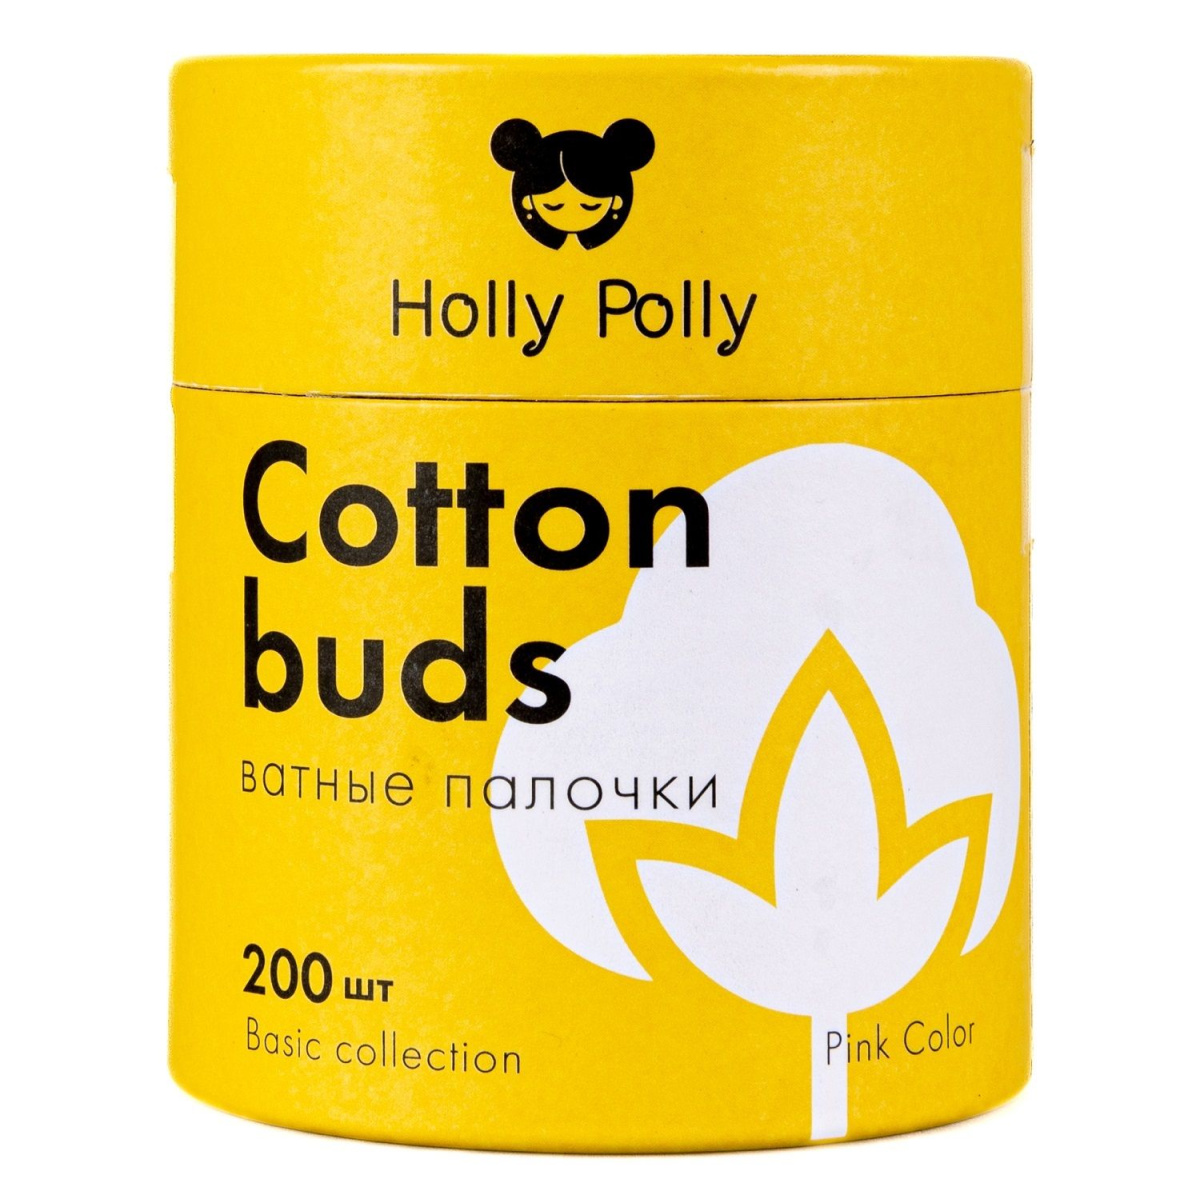 Holly Polly - Ватные палочки бамбуковые косметические розовые 200 шт Holly Polly (Россия) купить по цене 204 руб.